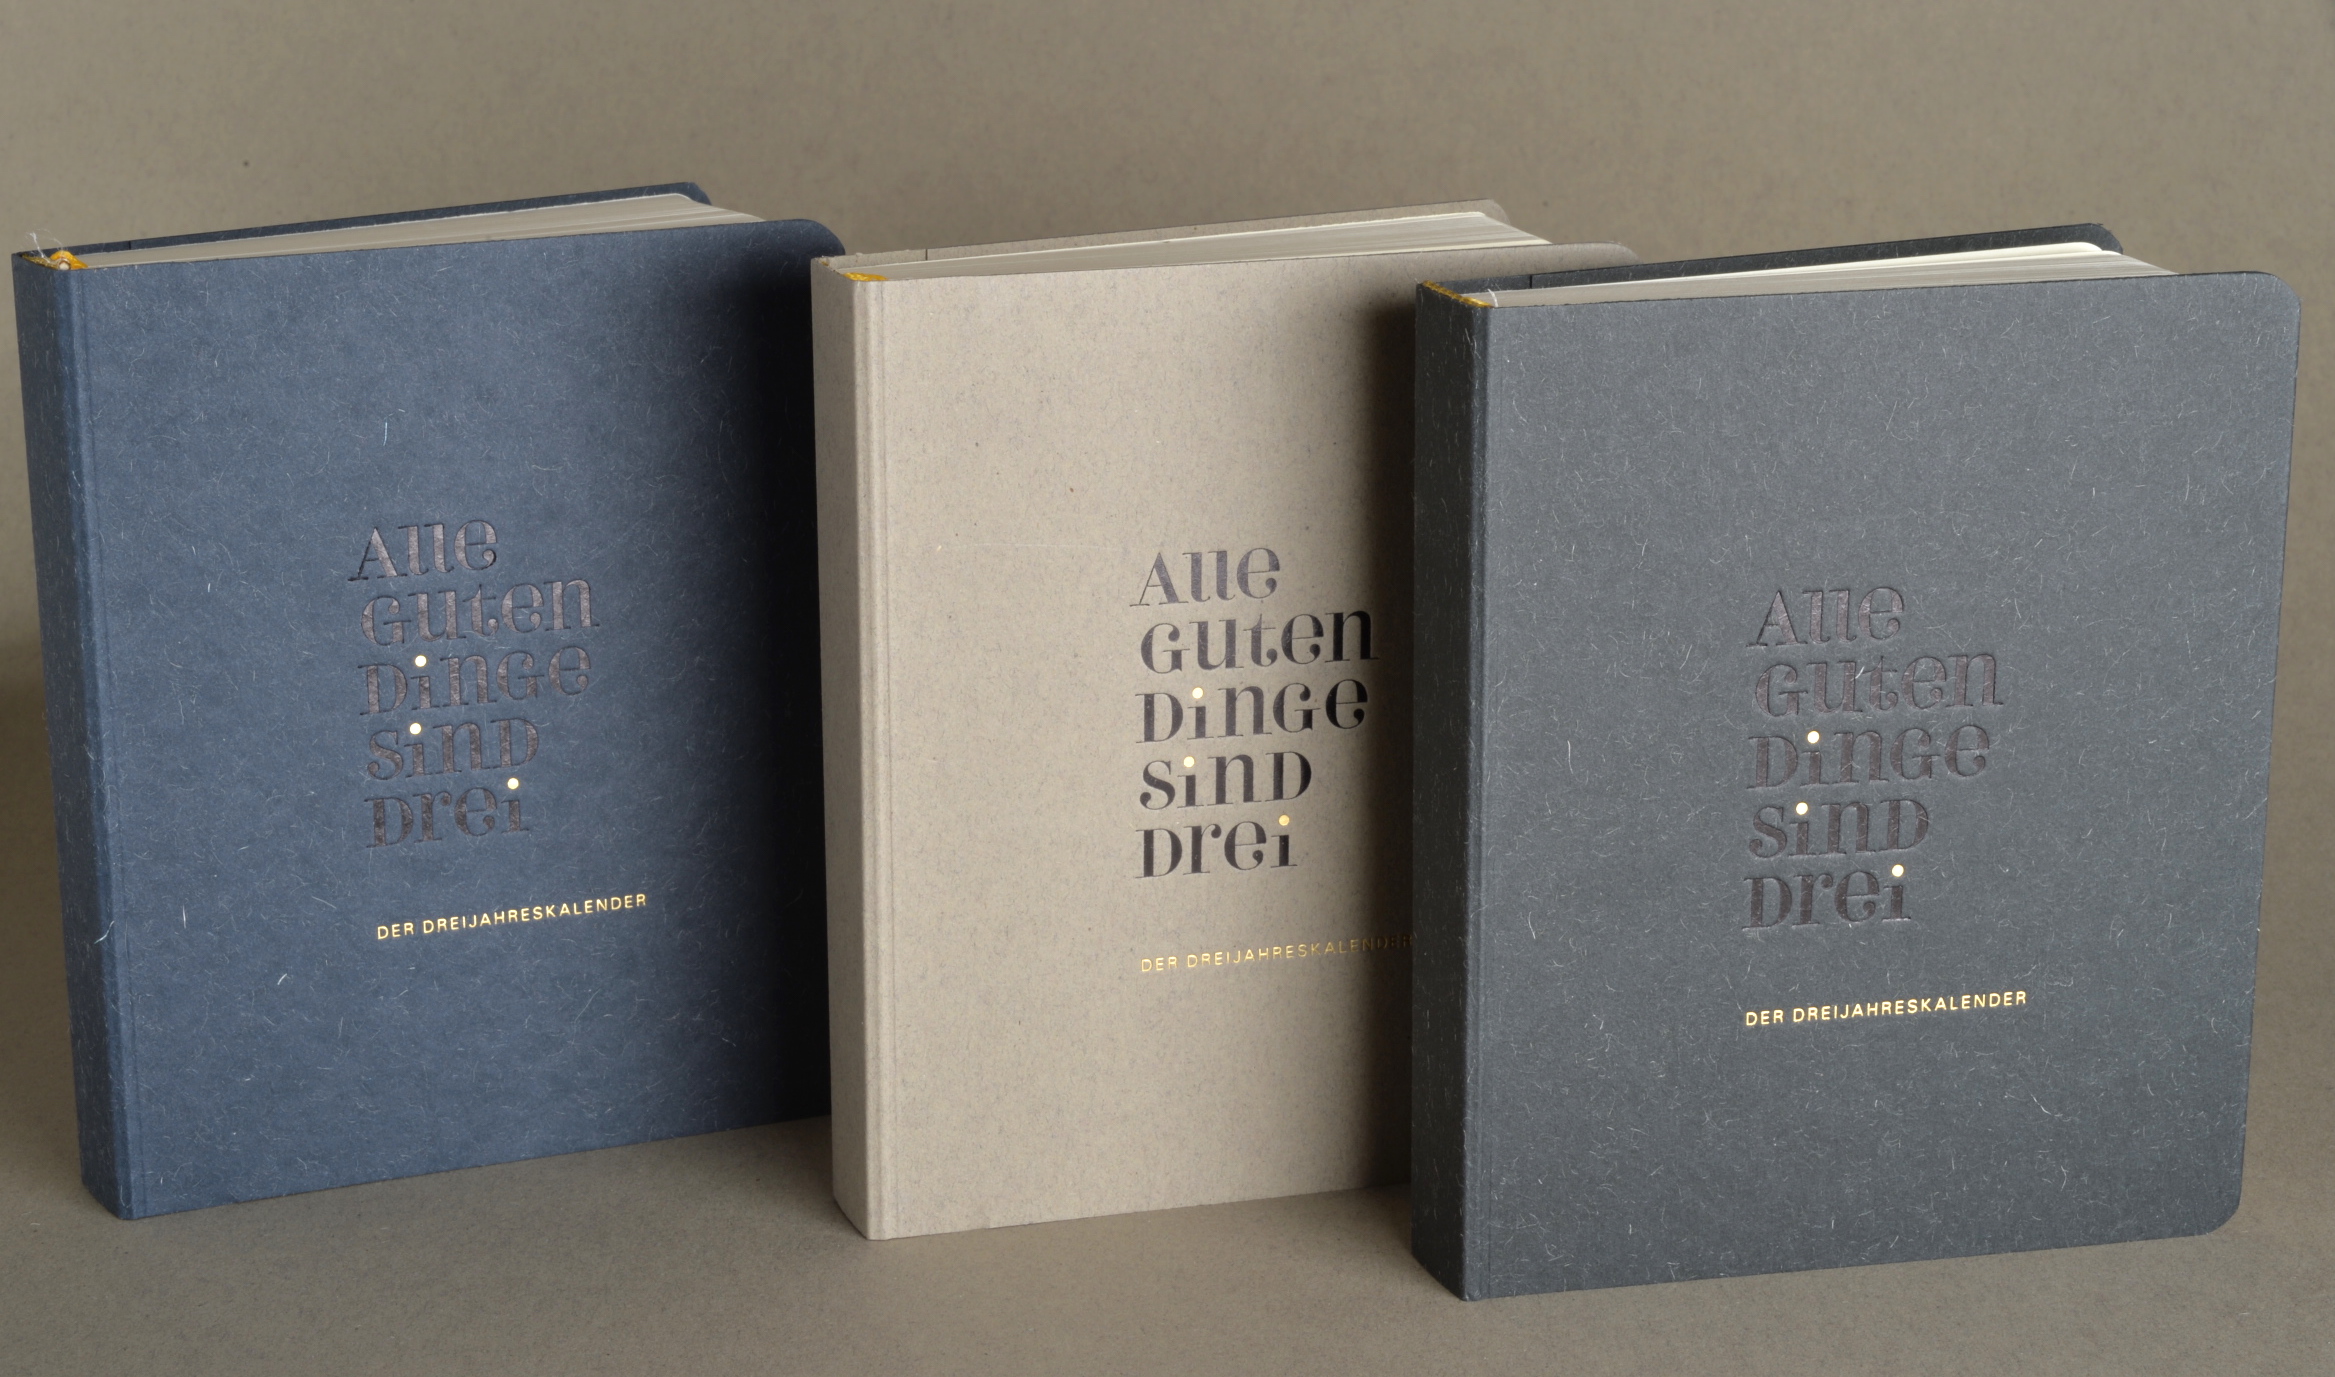 Dreijahreskalender, Tagebuch, nachhaltig hergestellt, Diary, minimalistisches Design, Hersteller Teschner-Werkraum Berlin